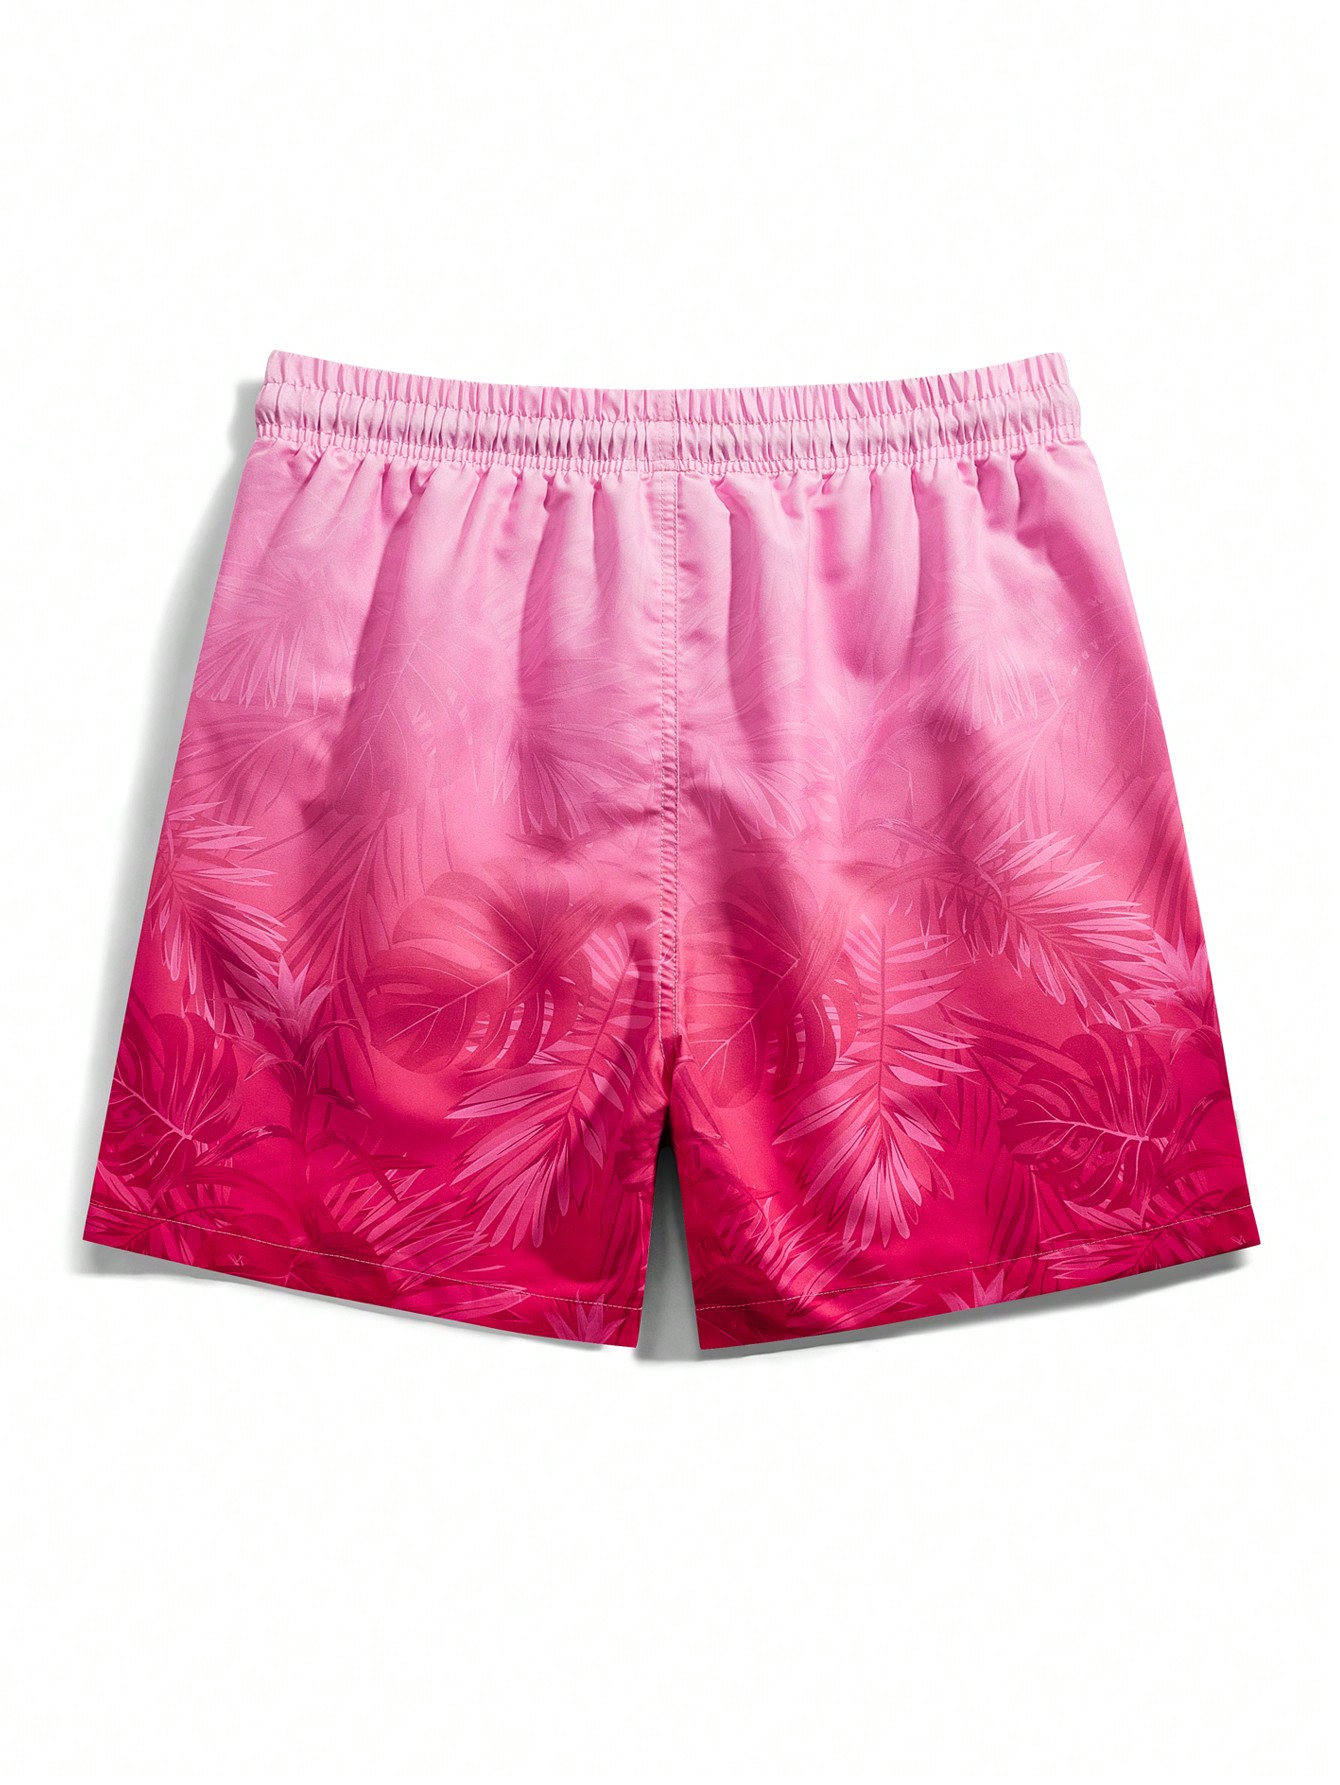 Мужские шорты Manfinity с принтом тропических растений для пляжной одежды, розовый